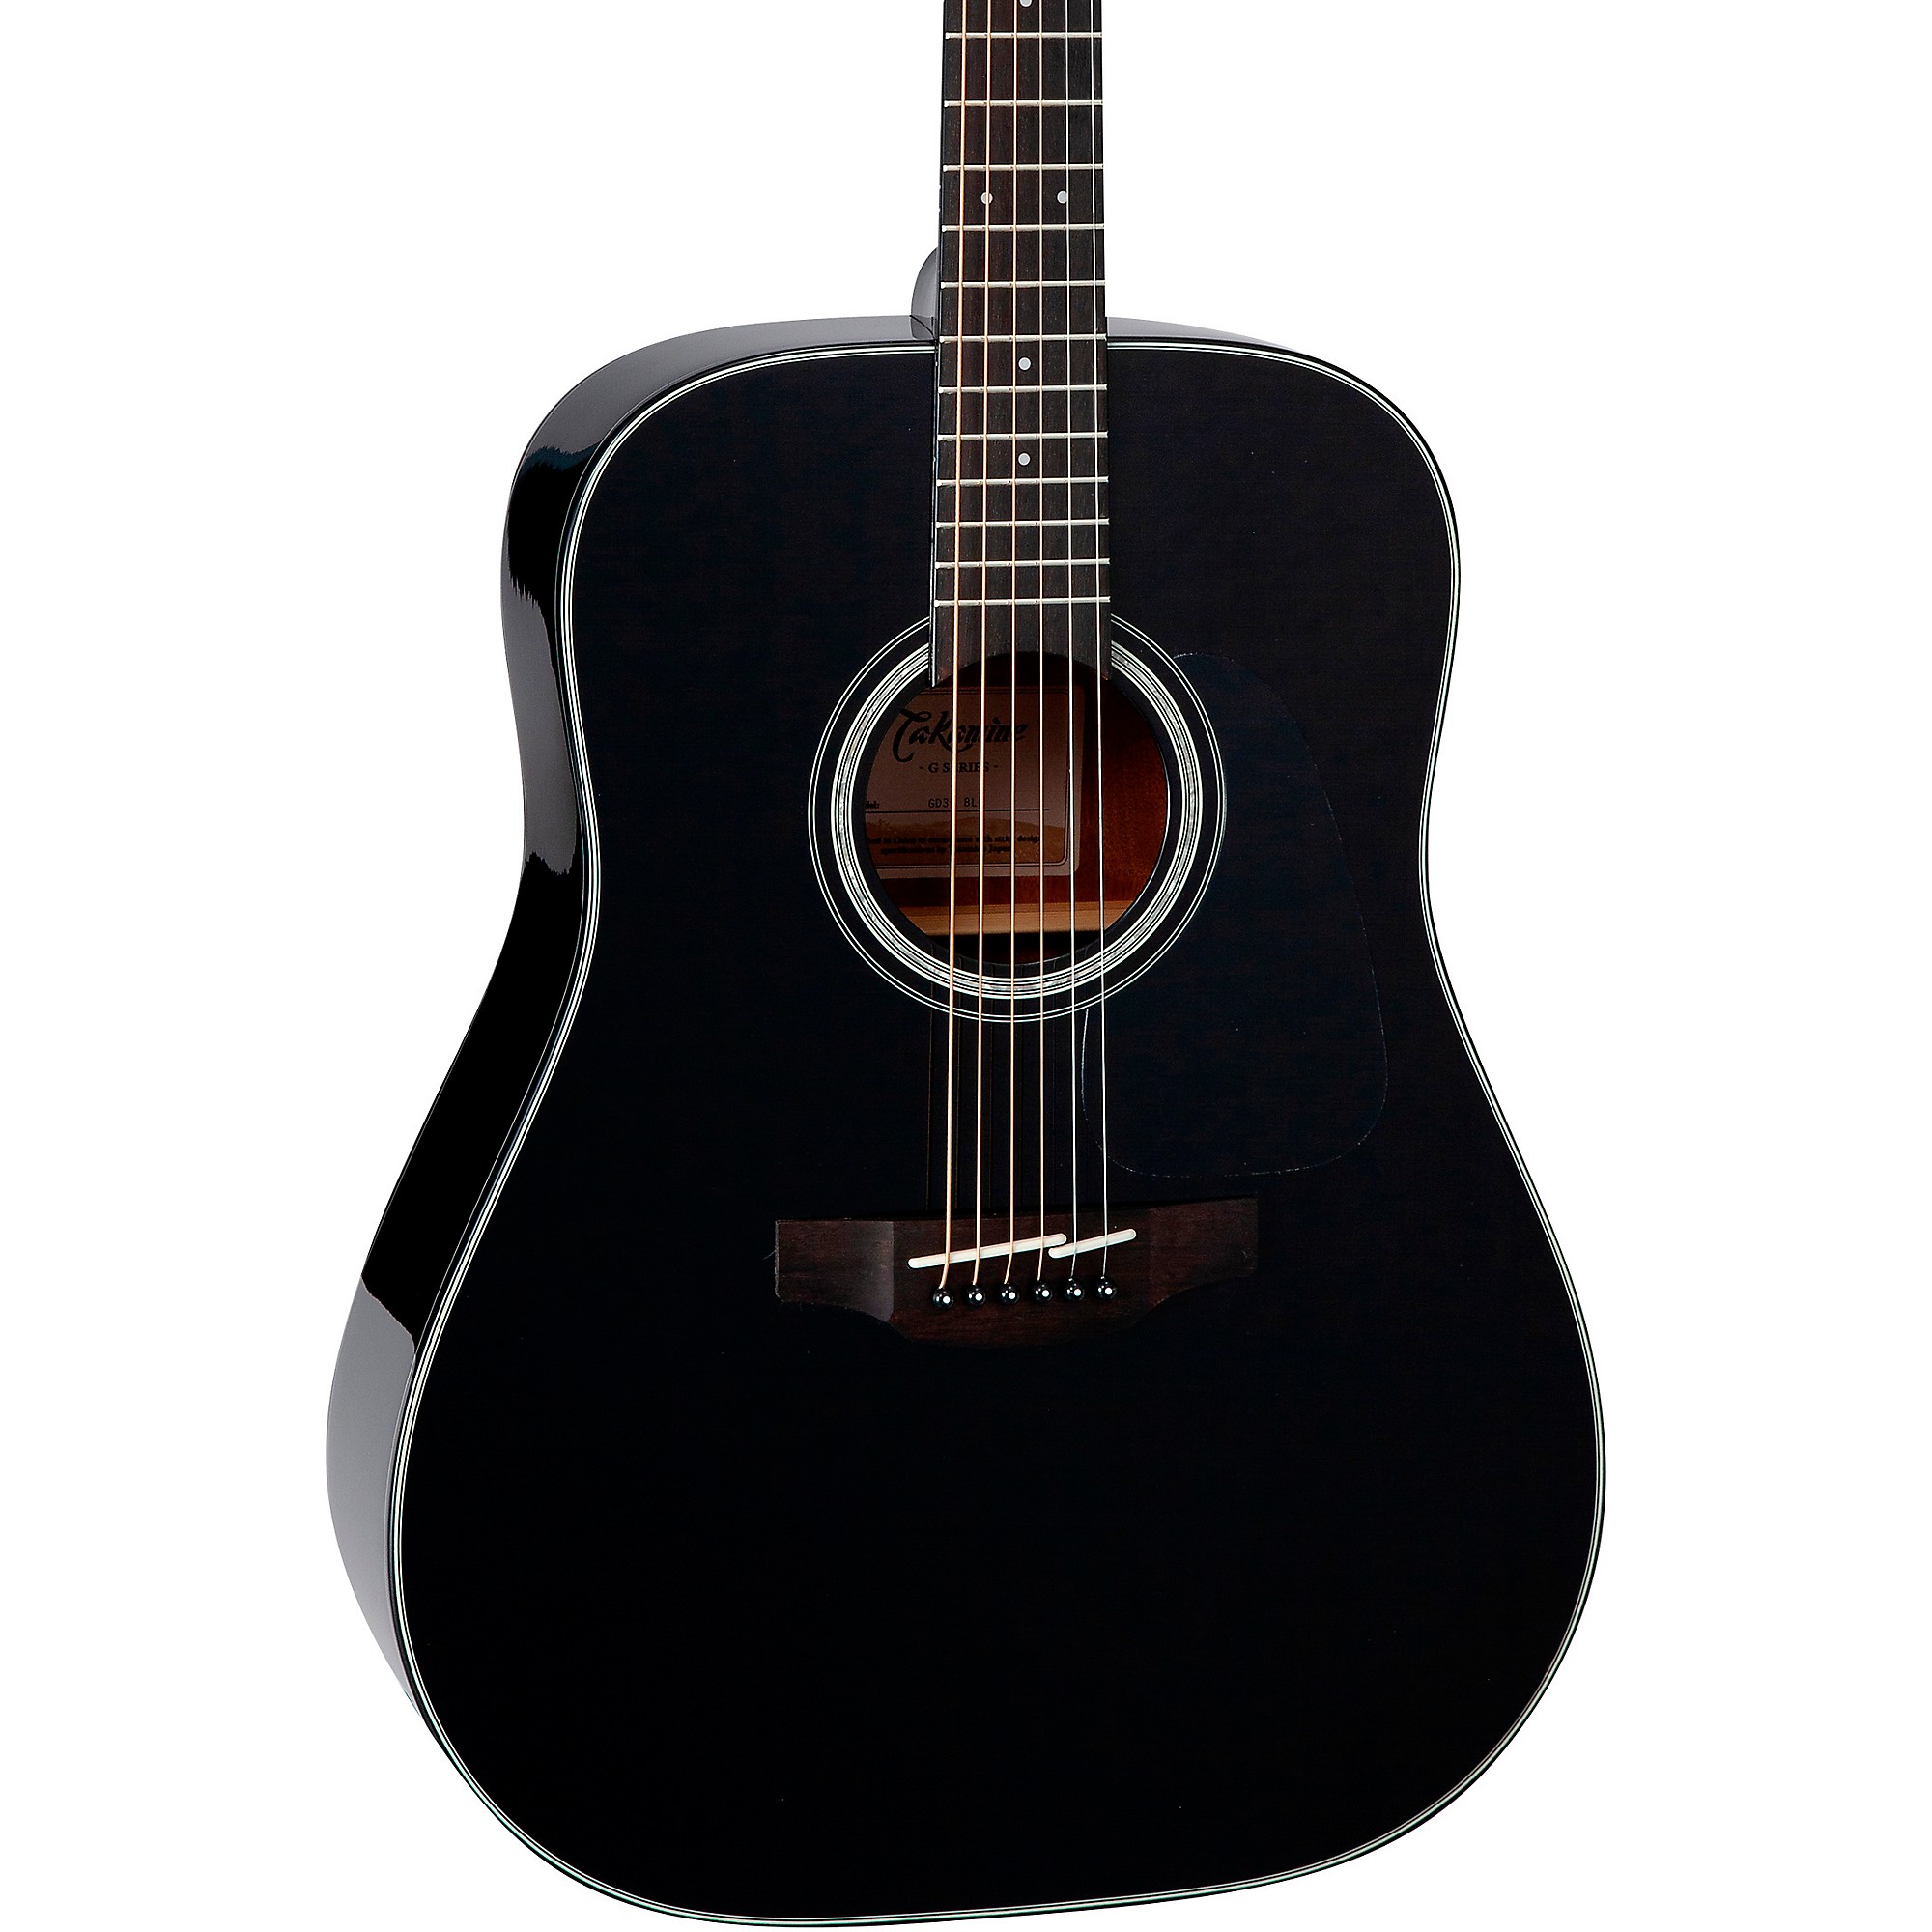 Акустическая гитара Takamine G Series Dreadnought Solid Top, глянцевая, черная